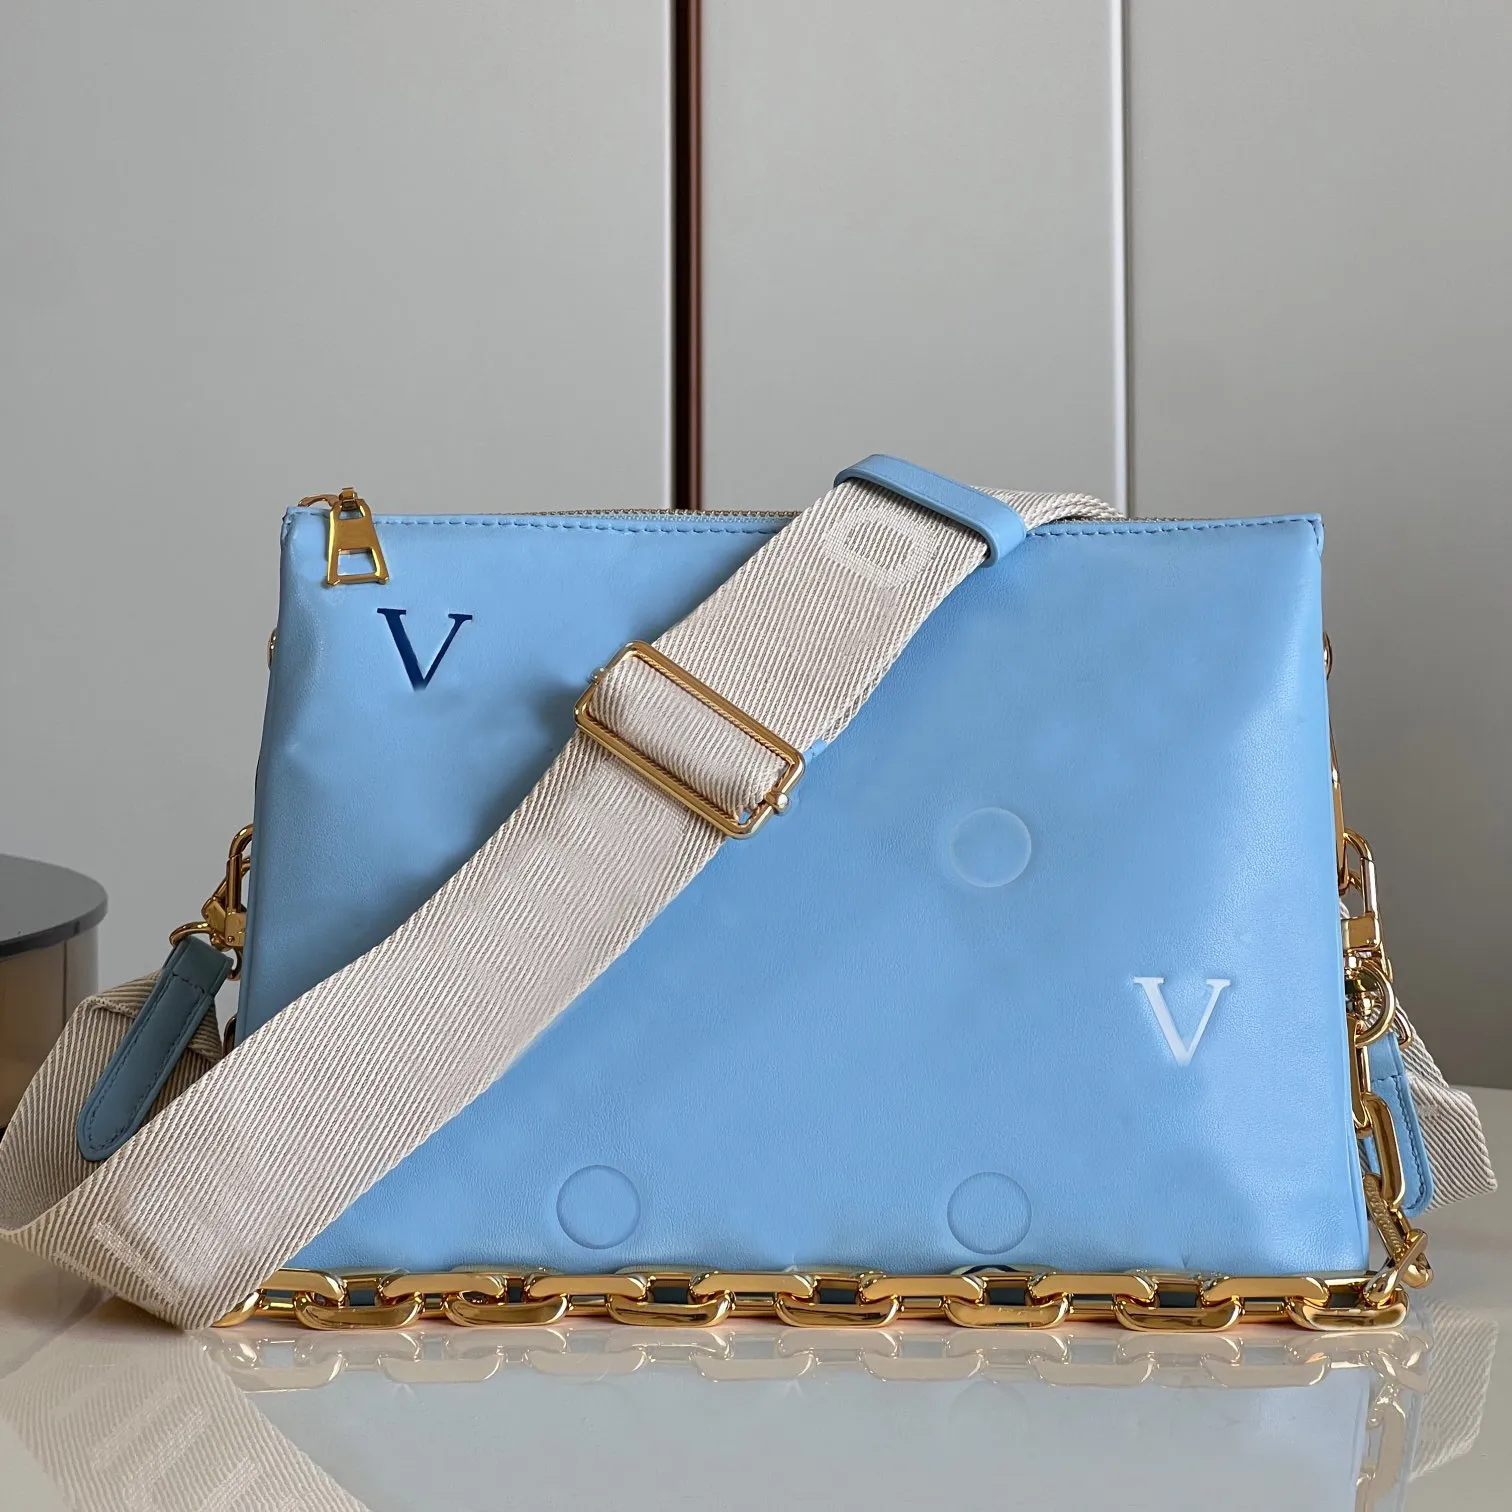 9a designer väskor lyxiga kedja äkta läderkompositväska 26 cm hög imitation handväskor